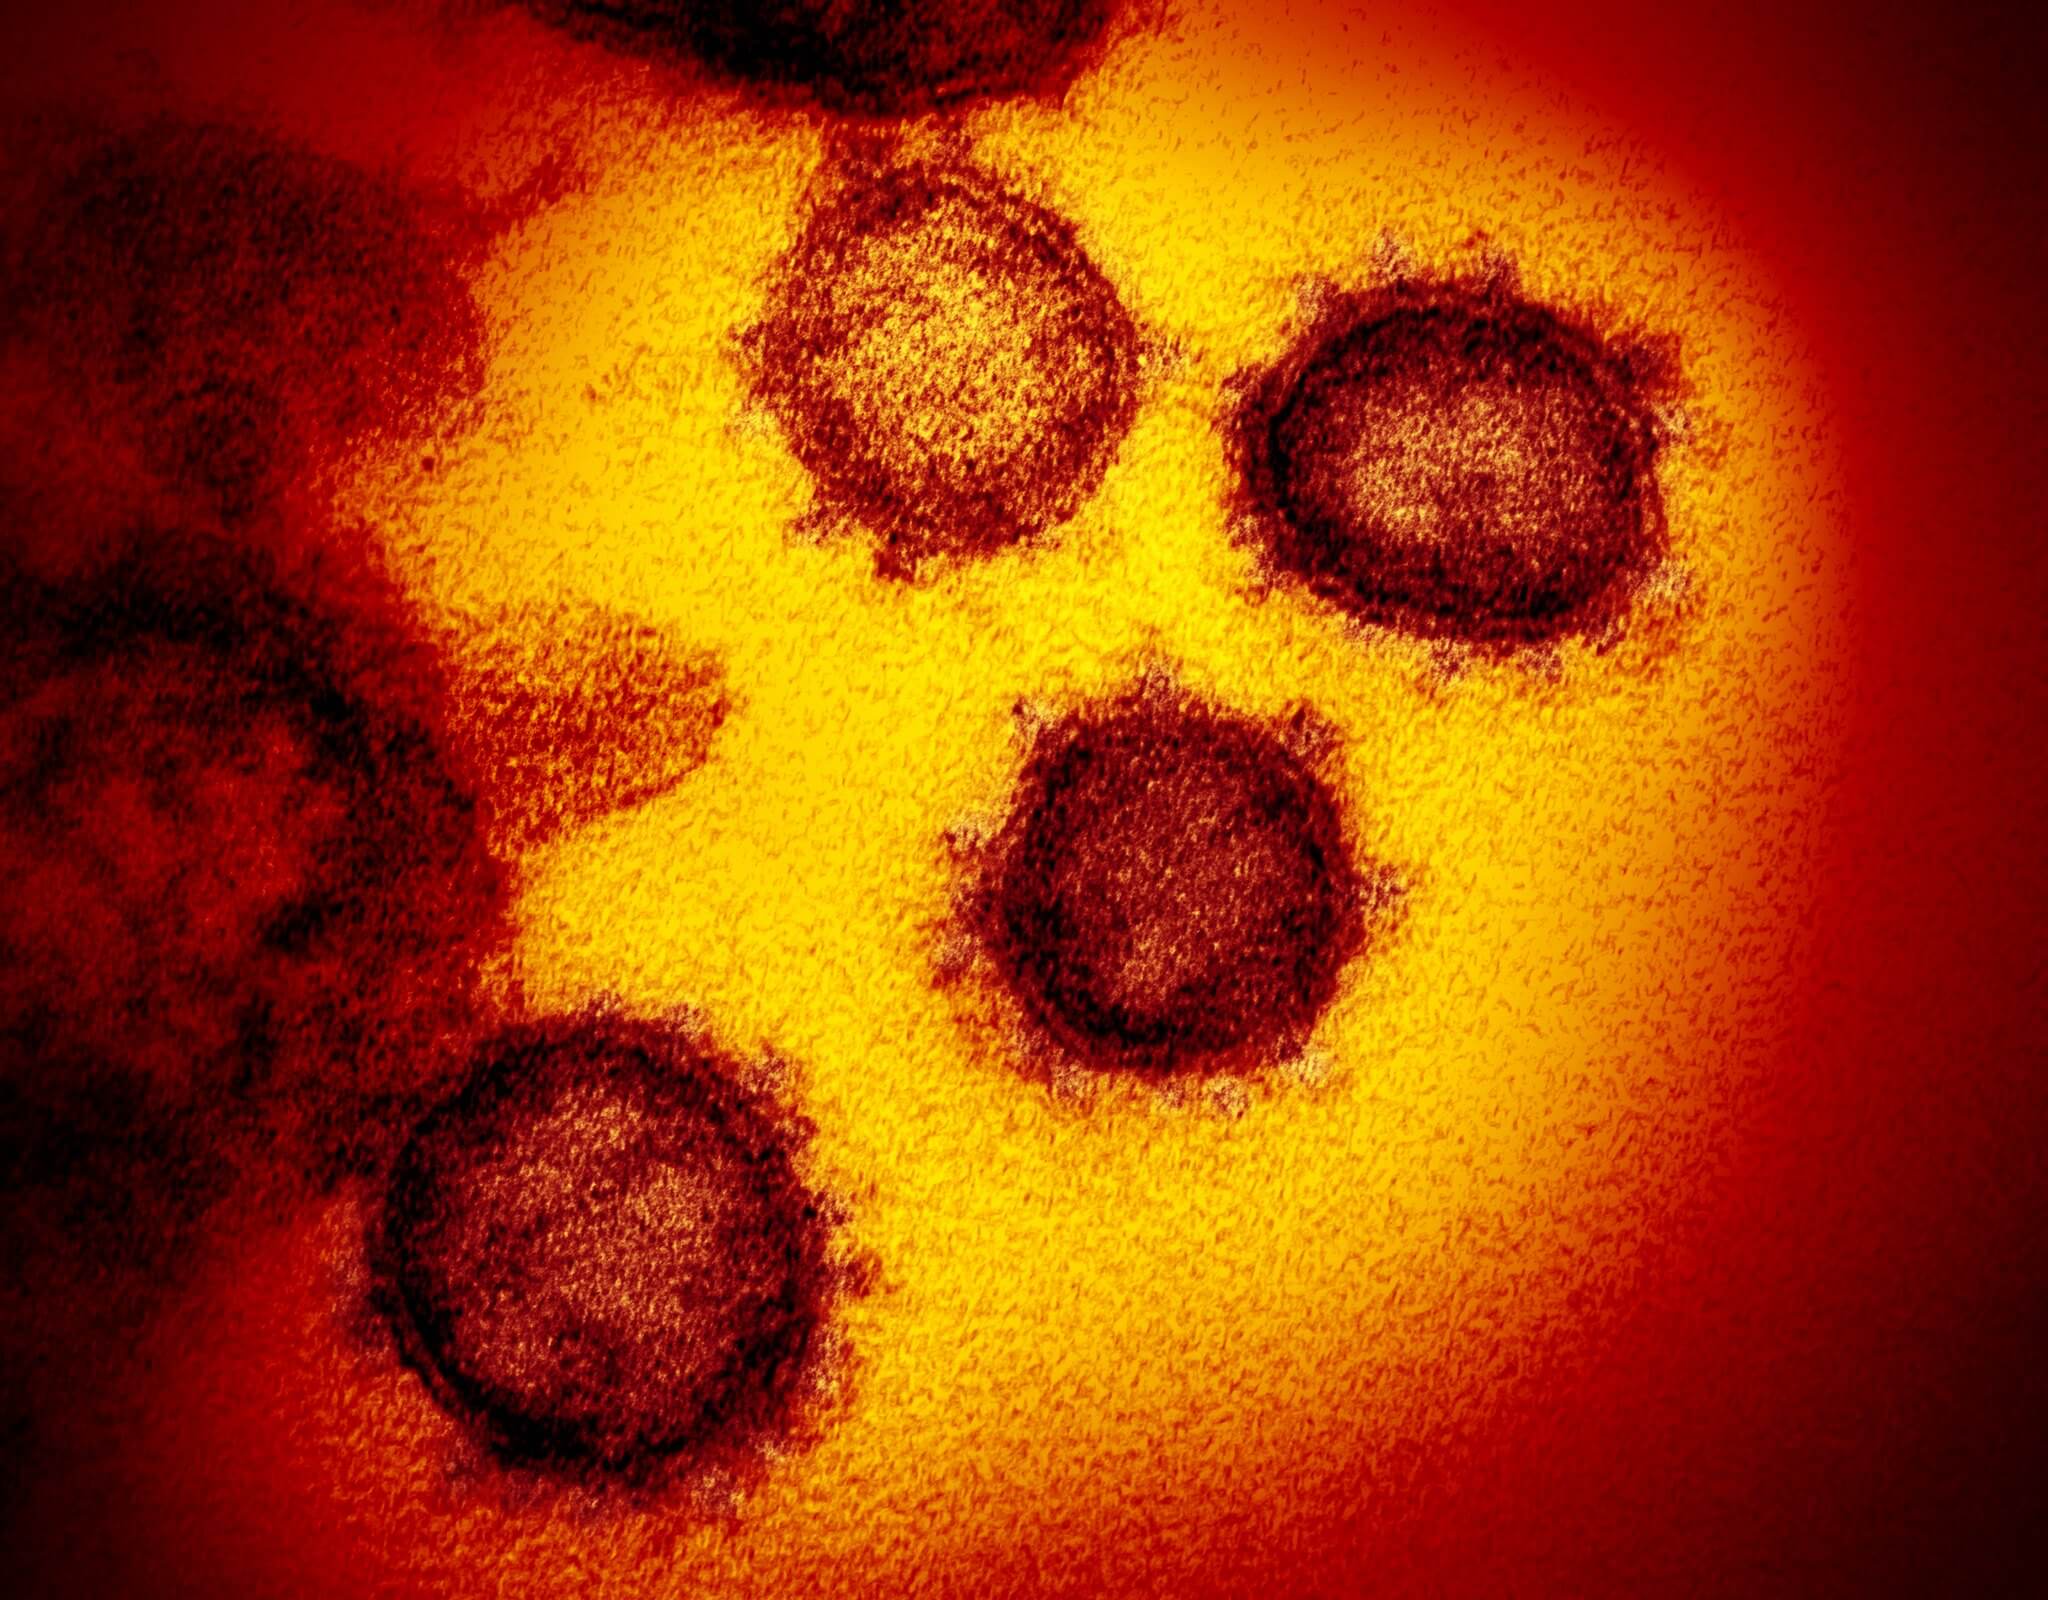 Comment évolue le nouveau coronavirus et sera-t-il plus dangereux avec le temps?